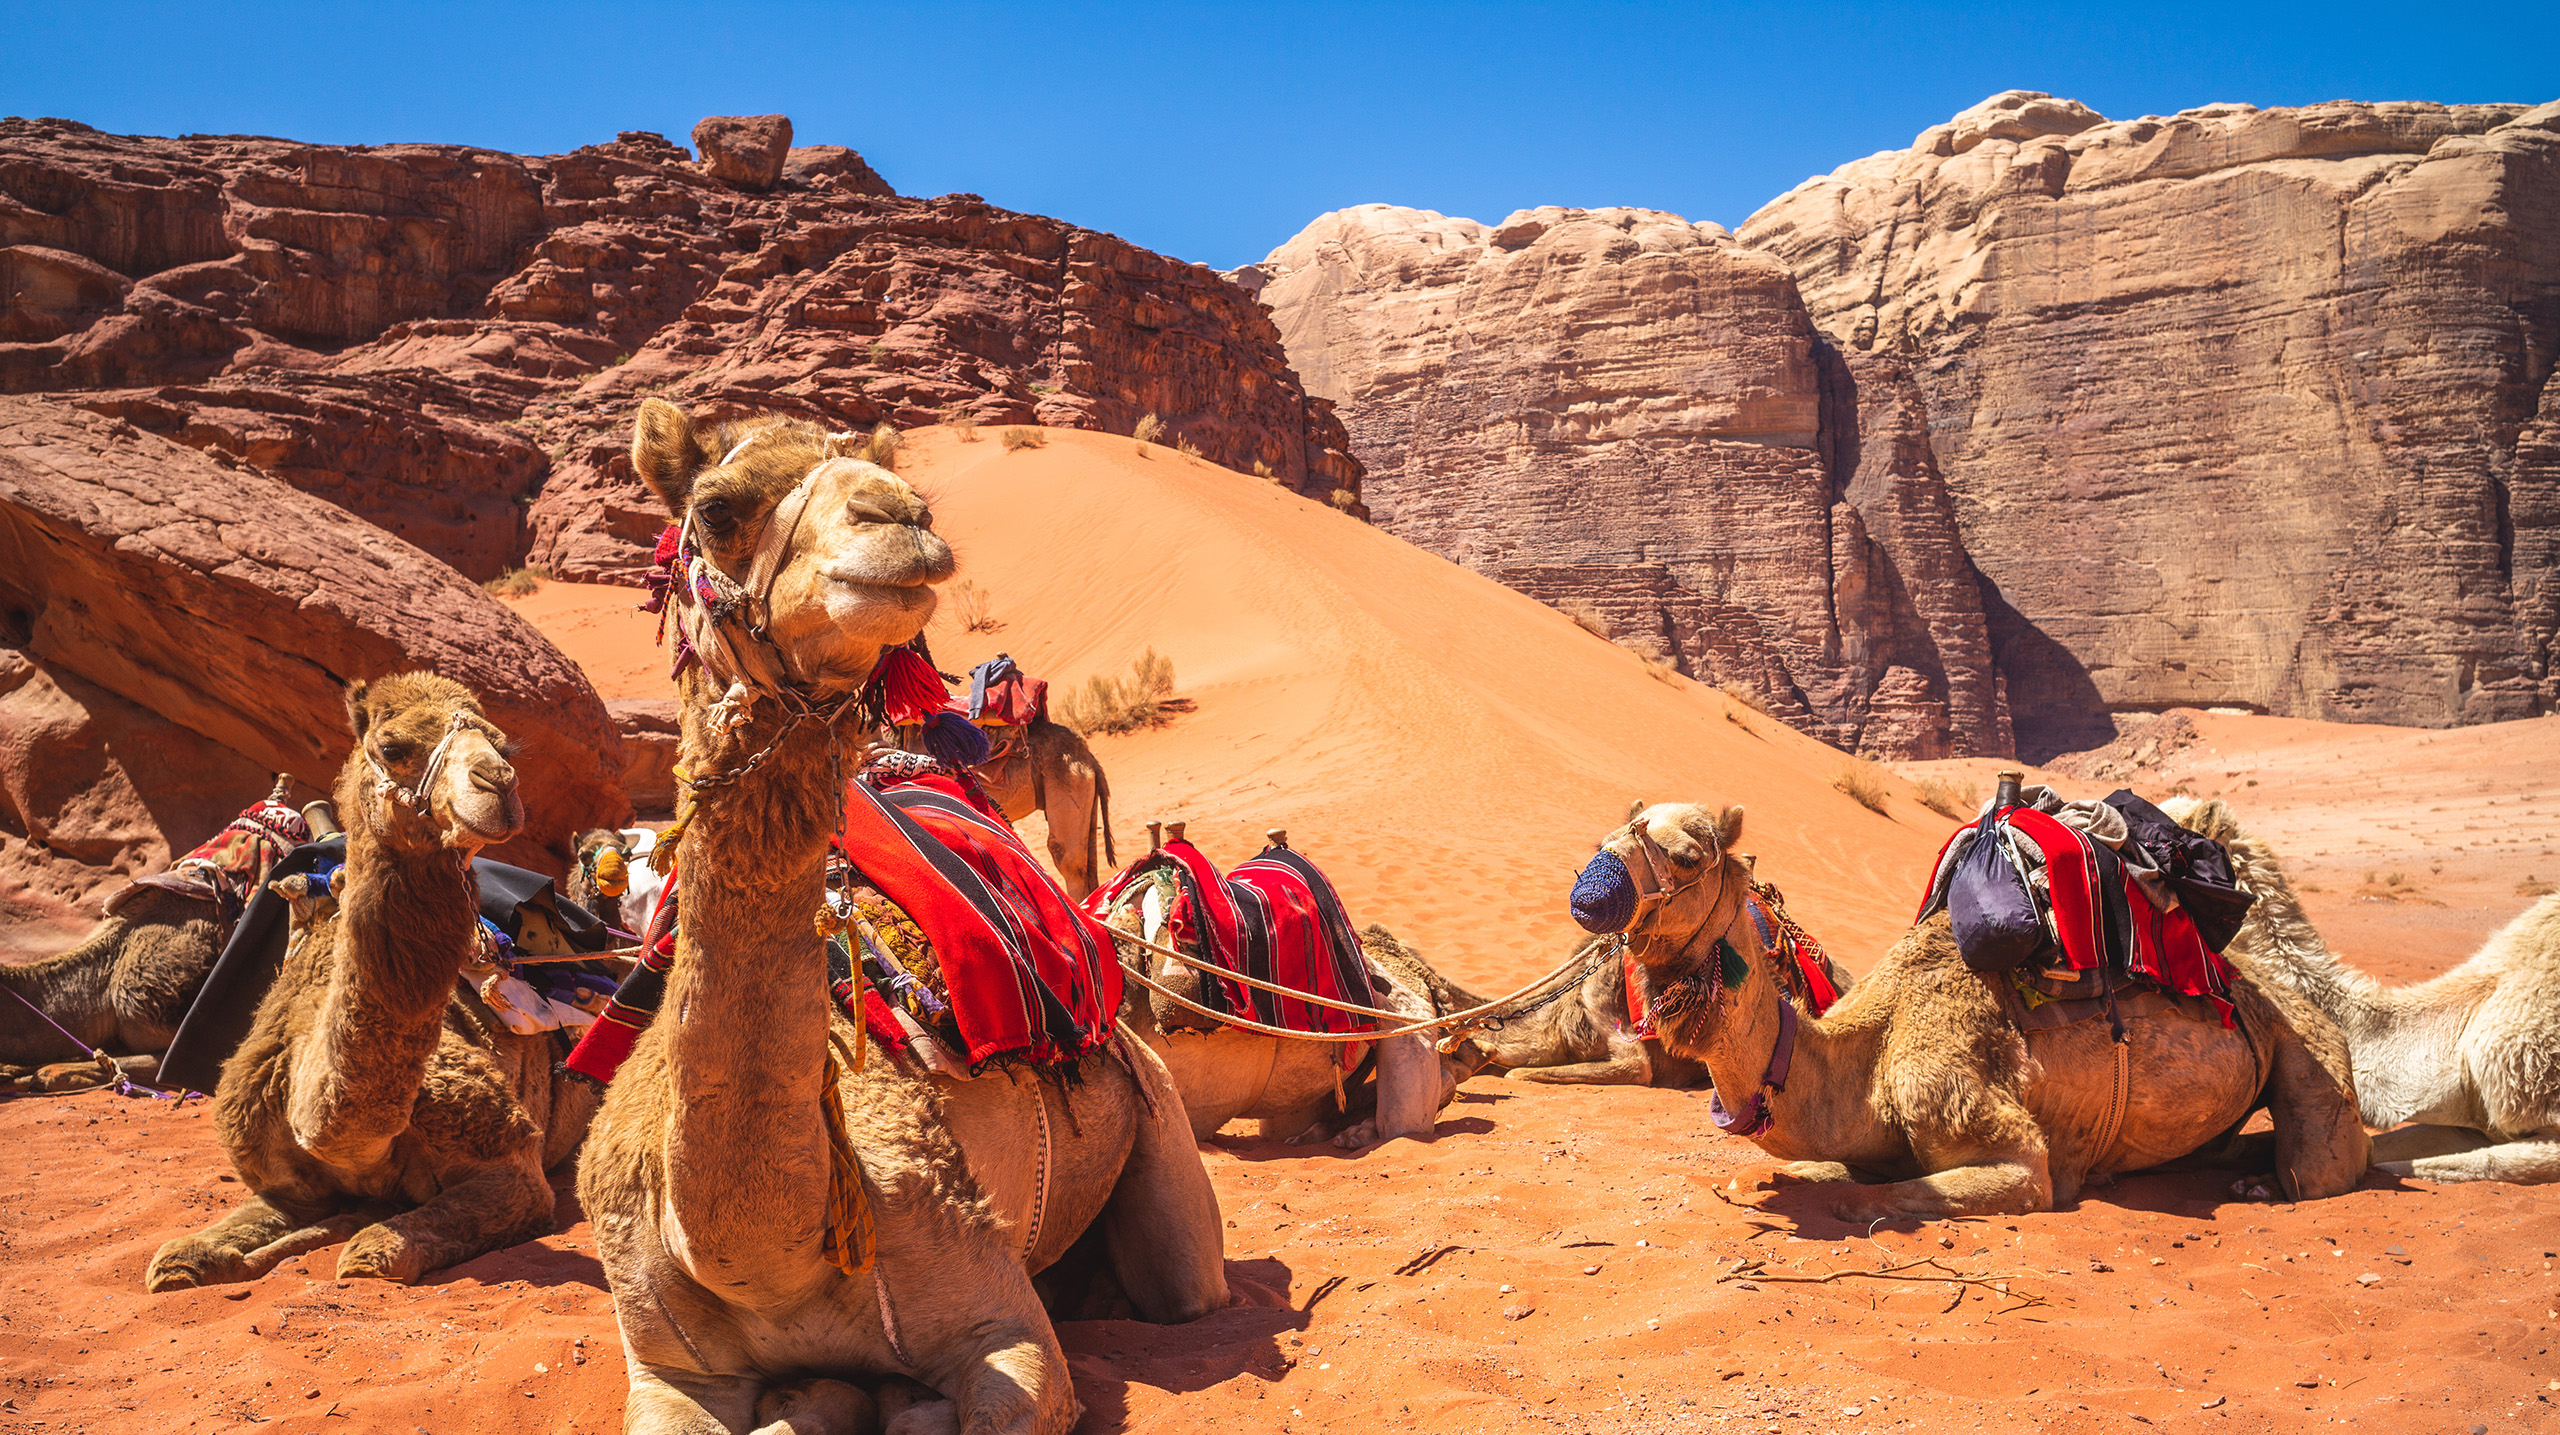 Camels sitting in the desert at Wadi Rum, Jordan